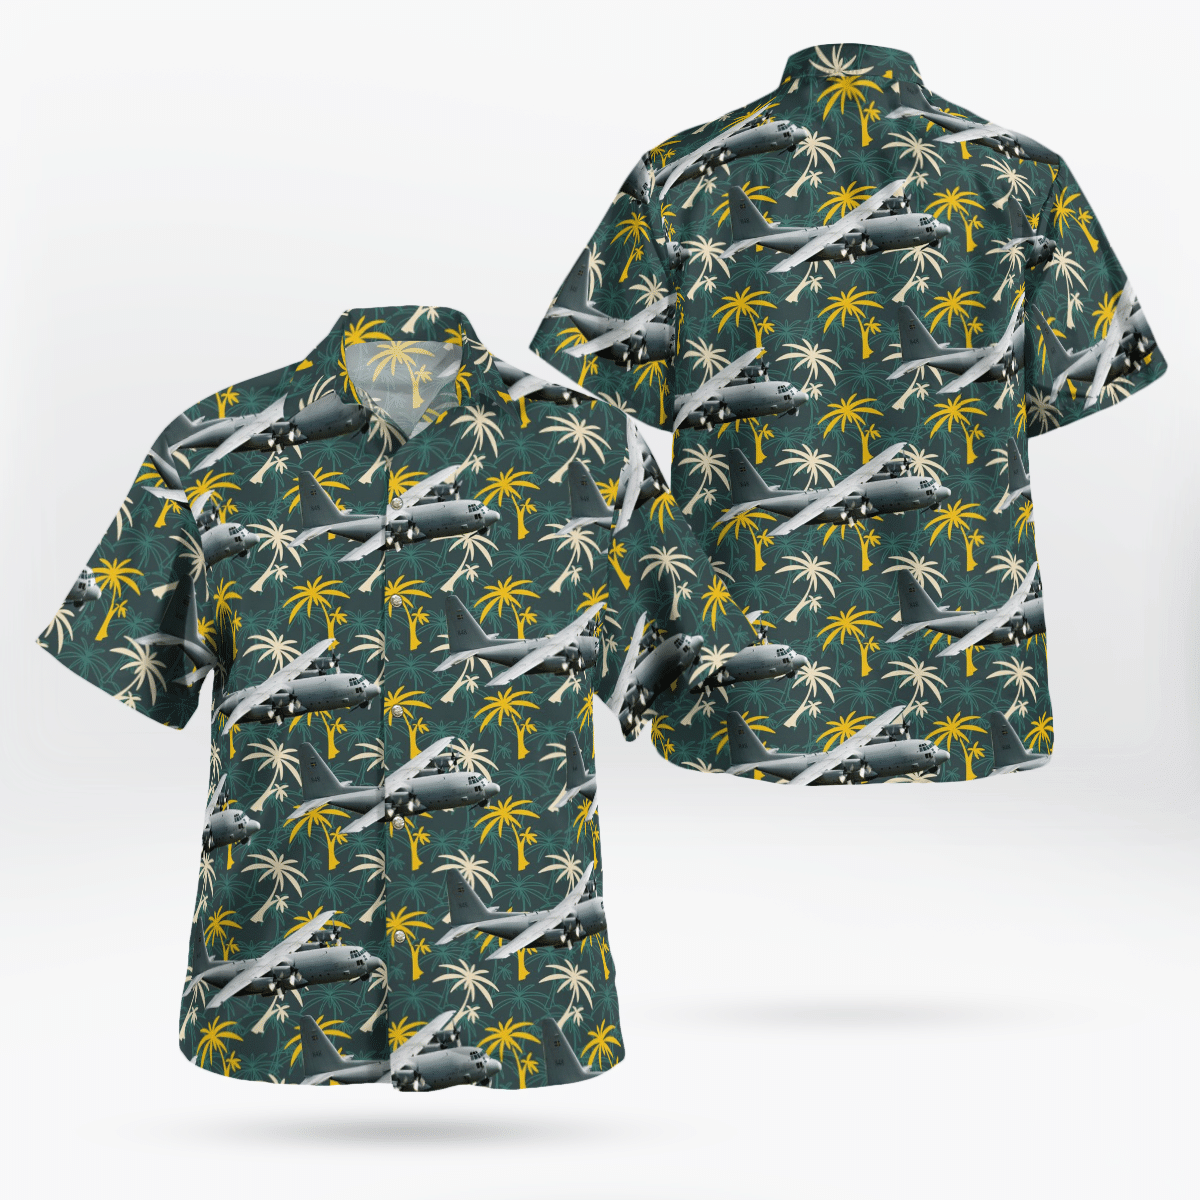 You won't regret buying these Aloha Shirt 148